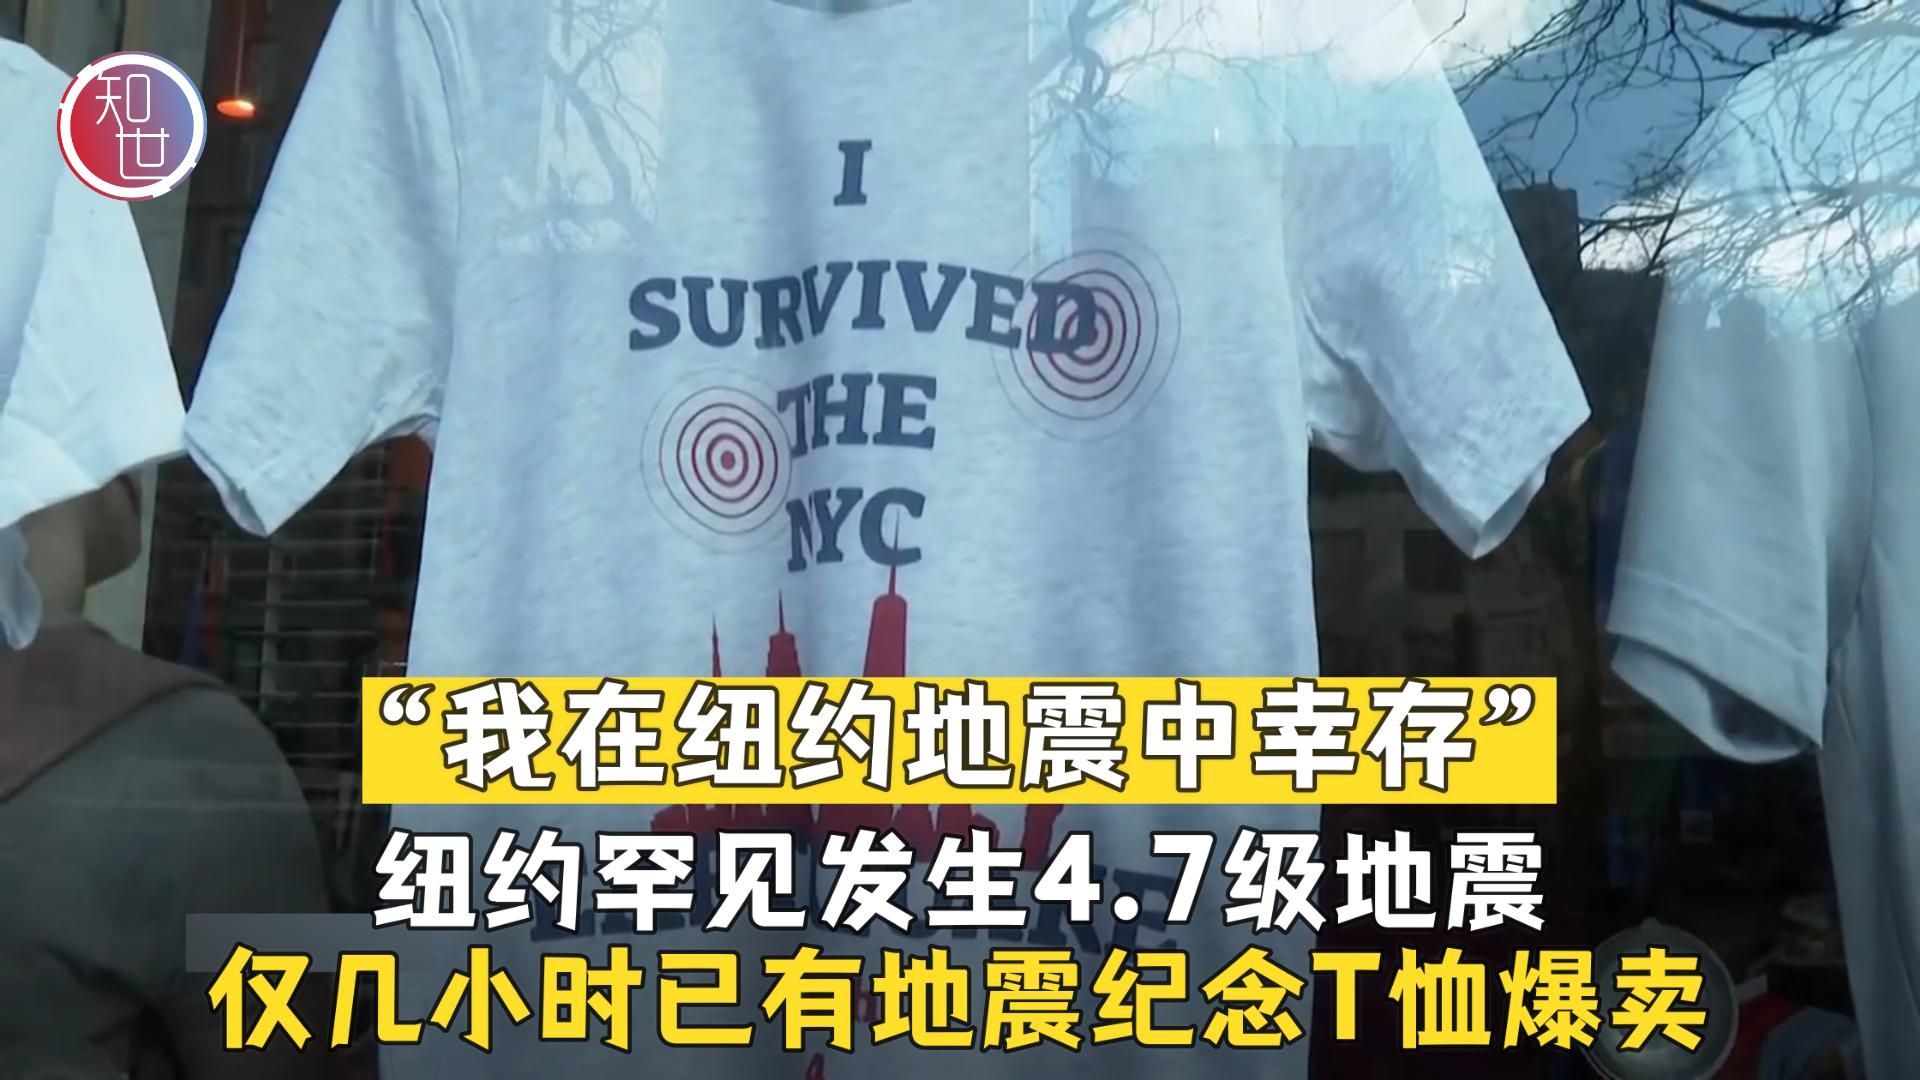 纽约罕见发生地震 “地震纪念T恤”网上走红爆卖